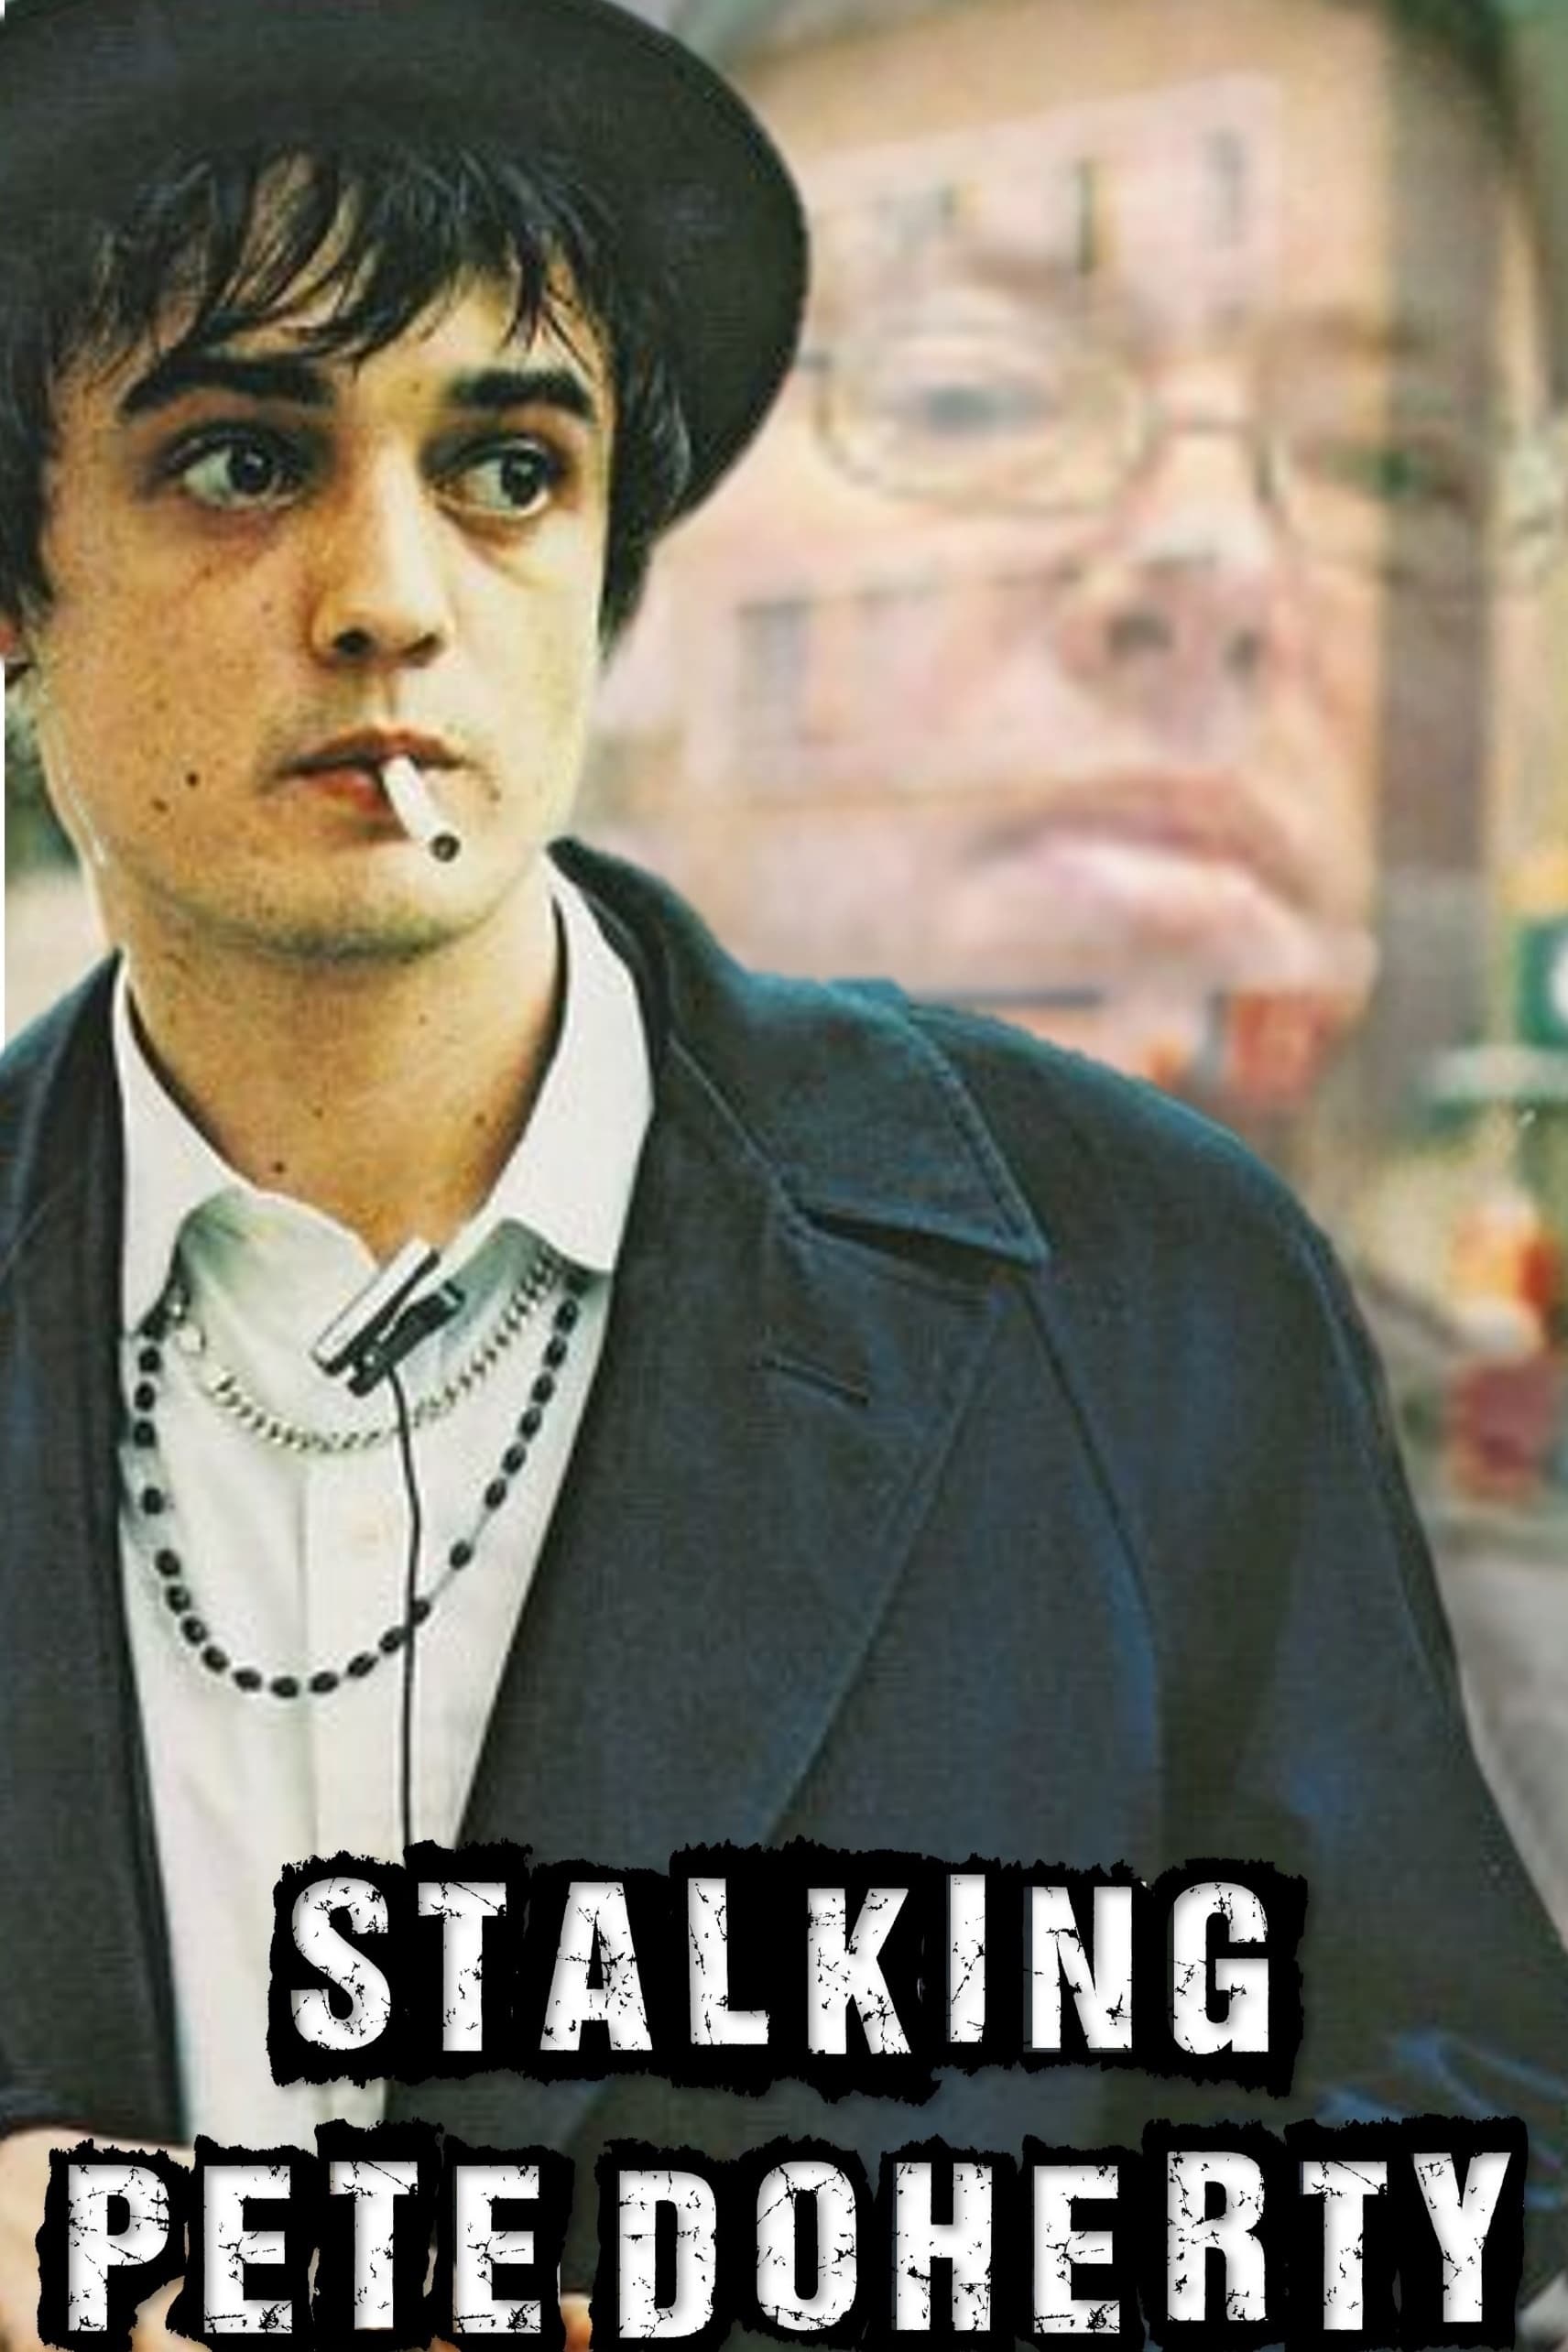 Stalking Pete Doherty